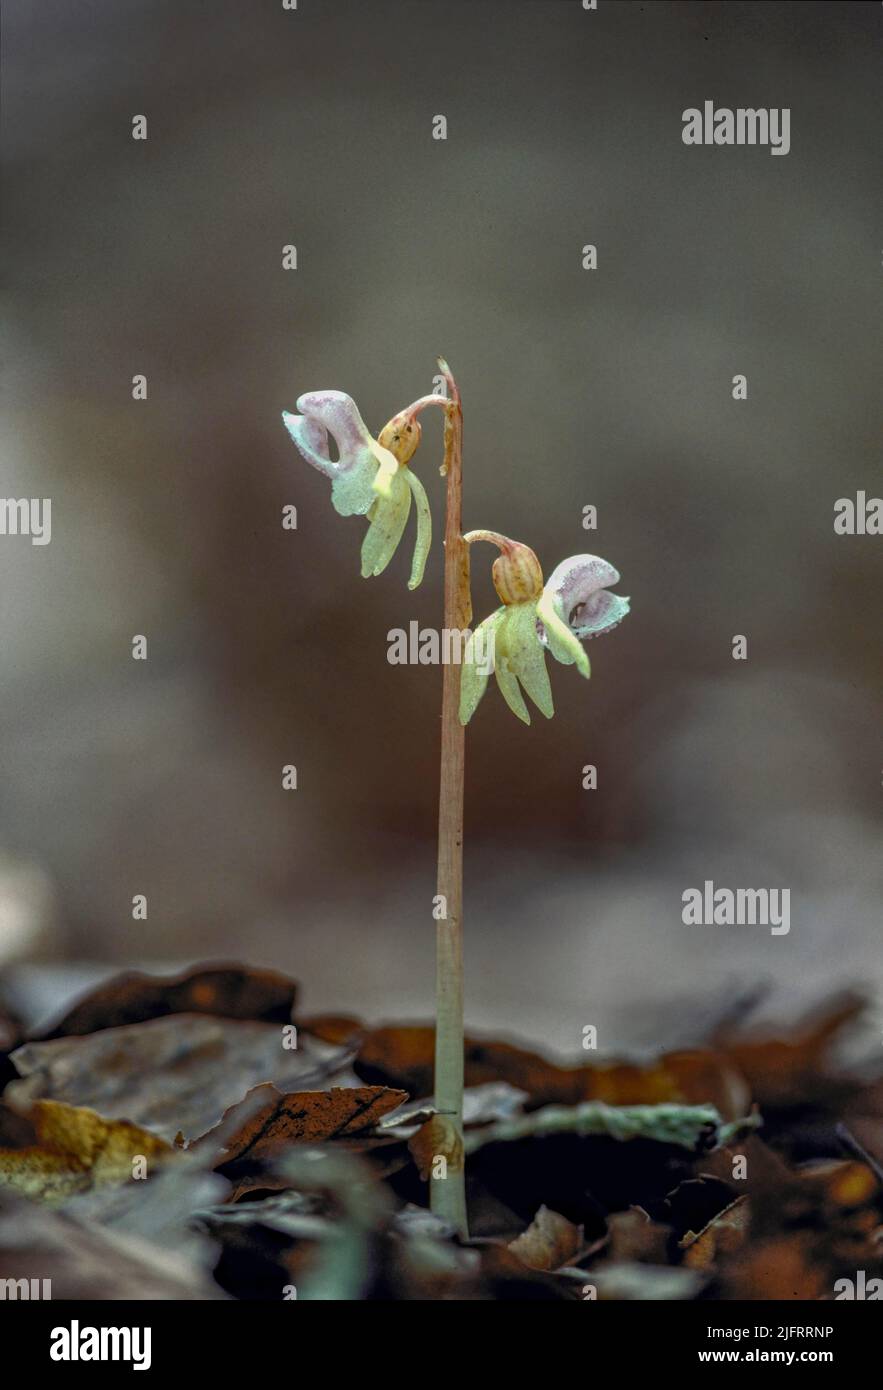 Geisterorchidee (Epipogium aphyllum) Marlow, Buckinghamshire, Großbritannien. Fotografiert im Jahr 1985, einer der letzten Ghost Orchids, die in Großbritannien bis zur Rediskov gesehen wurden Stockfoto